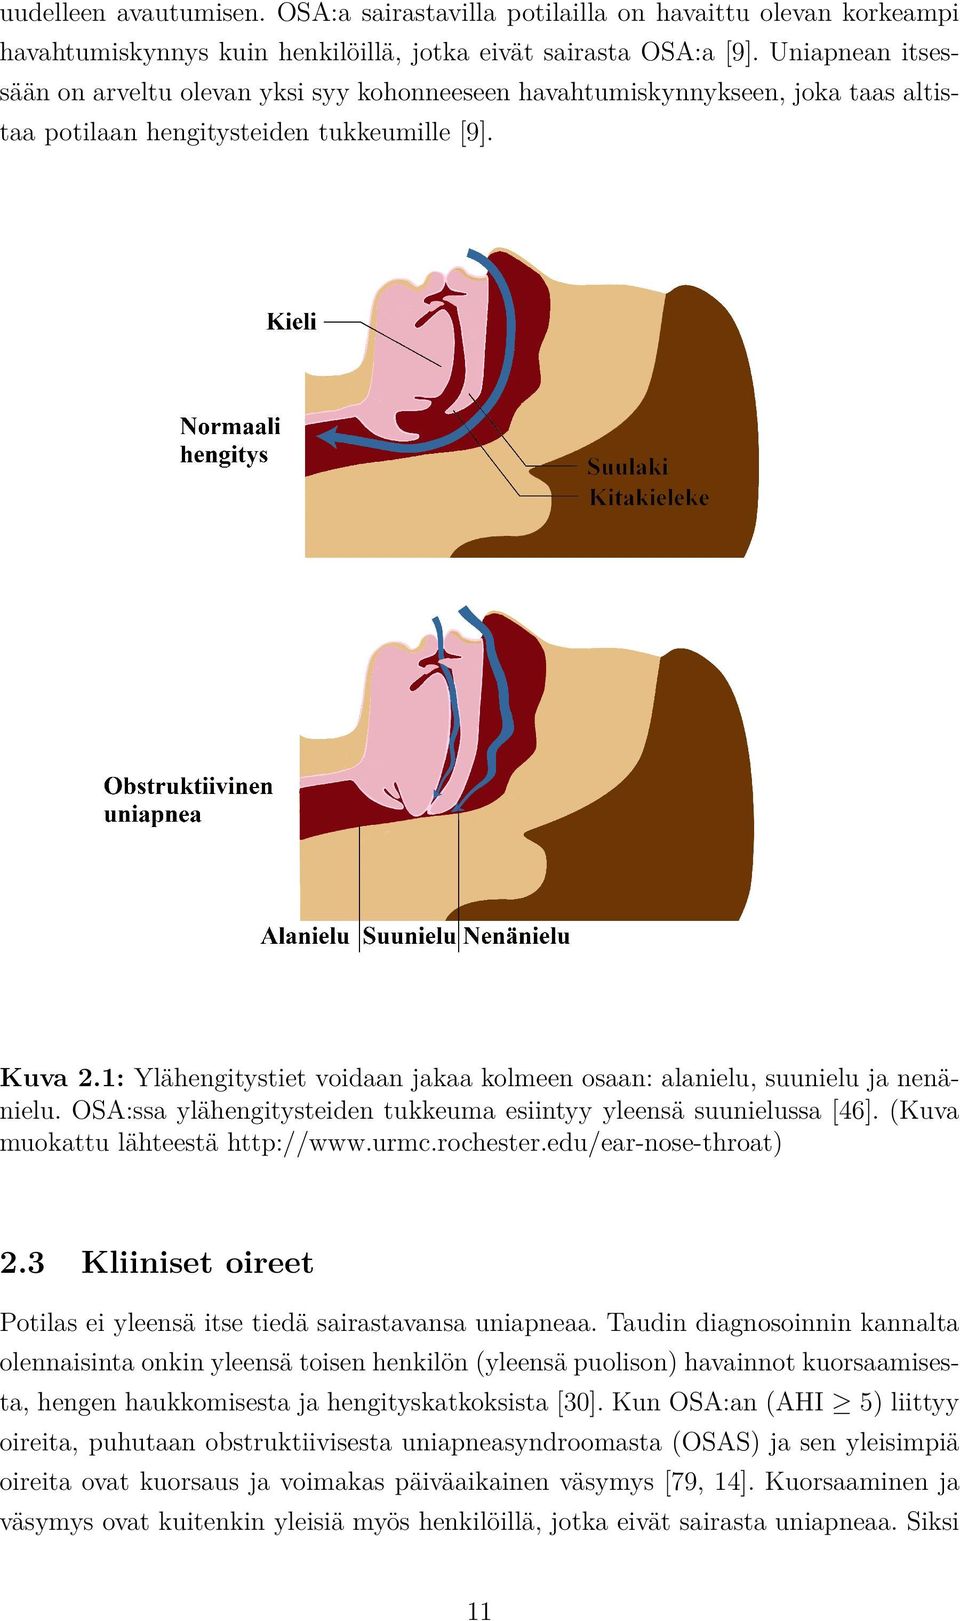 1: Ylähengitystiet voidaan jakaa kolmeen osaan: alanielu, suunielu ja nenänielu. OSA:ssa ylähengitysteiden tukkeuma esiintyy yleensä suunielussa [46]. (Kuva muokattu lähteestä http://www.urmc.